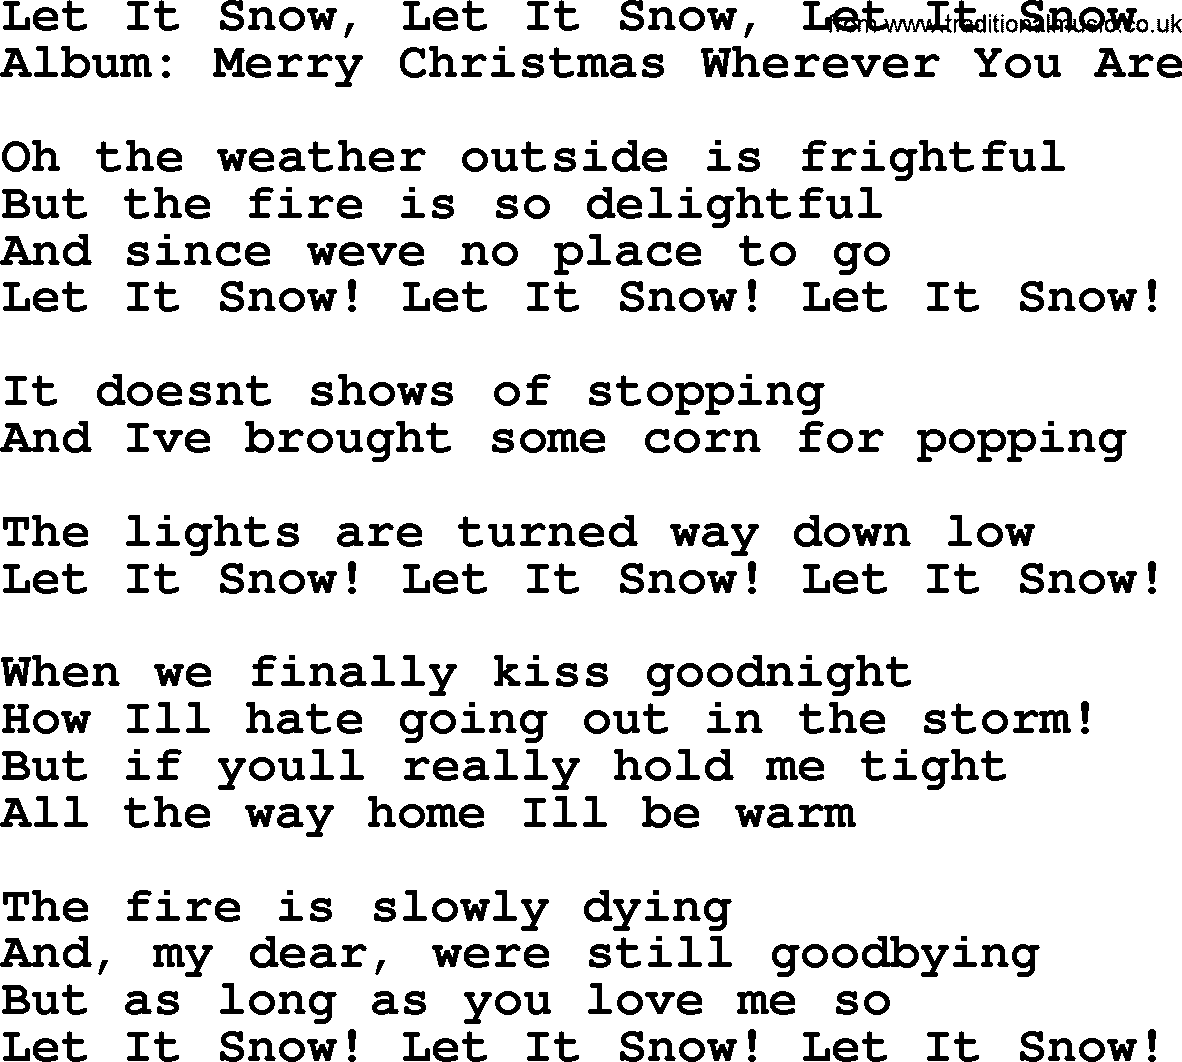 George Strait song: Let It Snow, Let It Snow, Let It Snow, lyrics